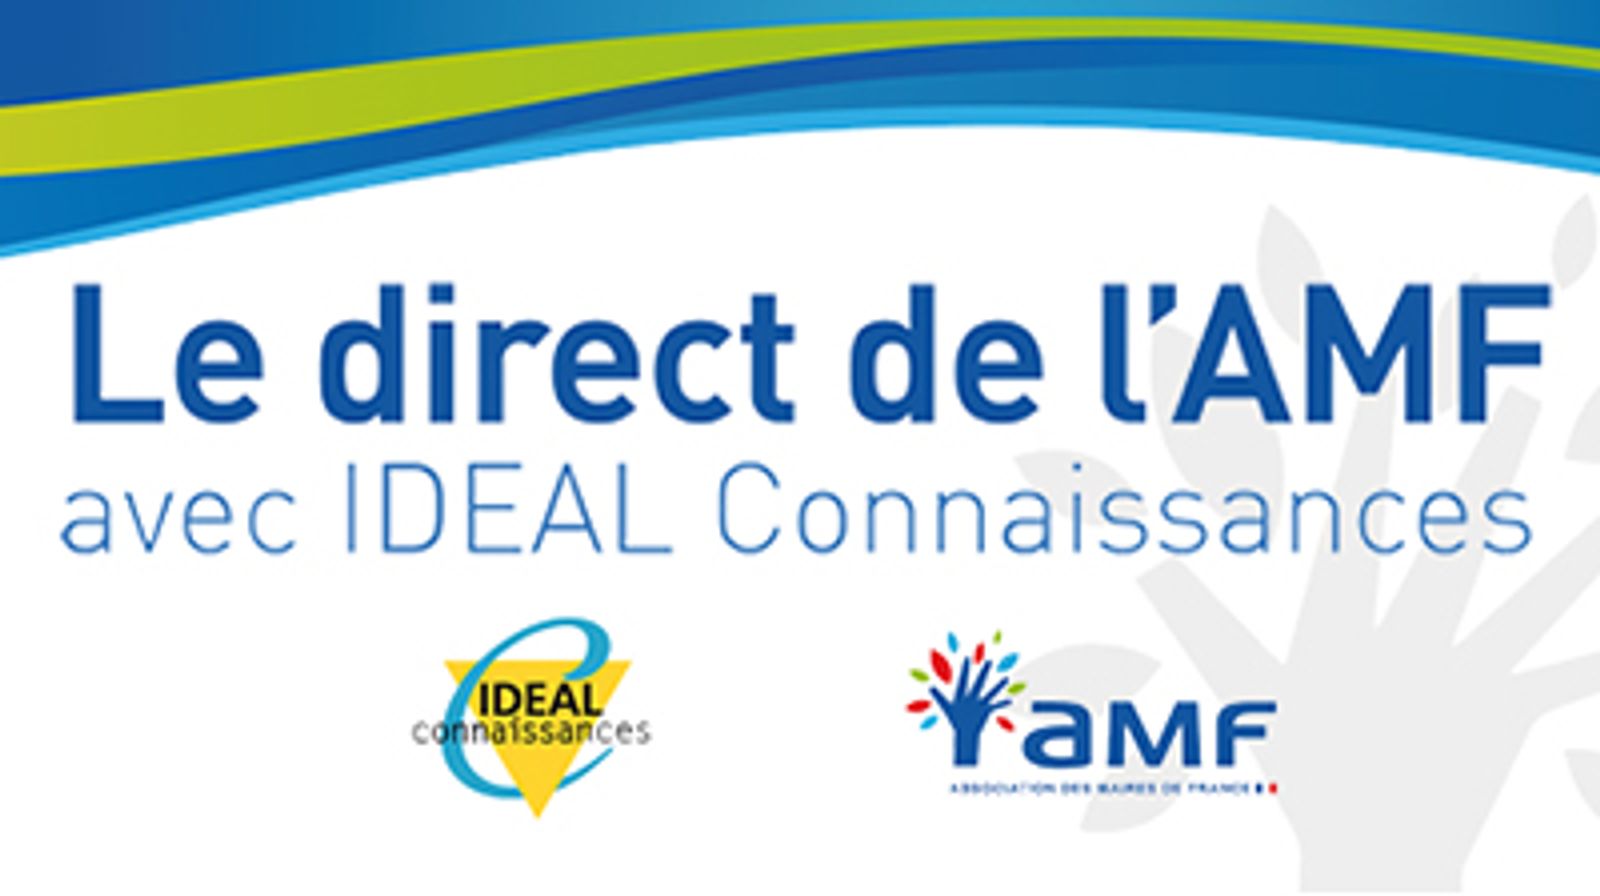 "Le direct de l'AMF avec IDEAL Connaissances" sur "Communes nouvelles, une dynamique en émergence"